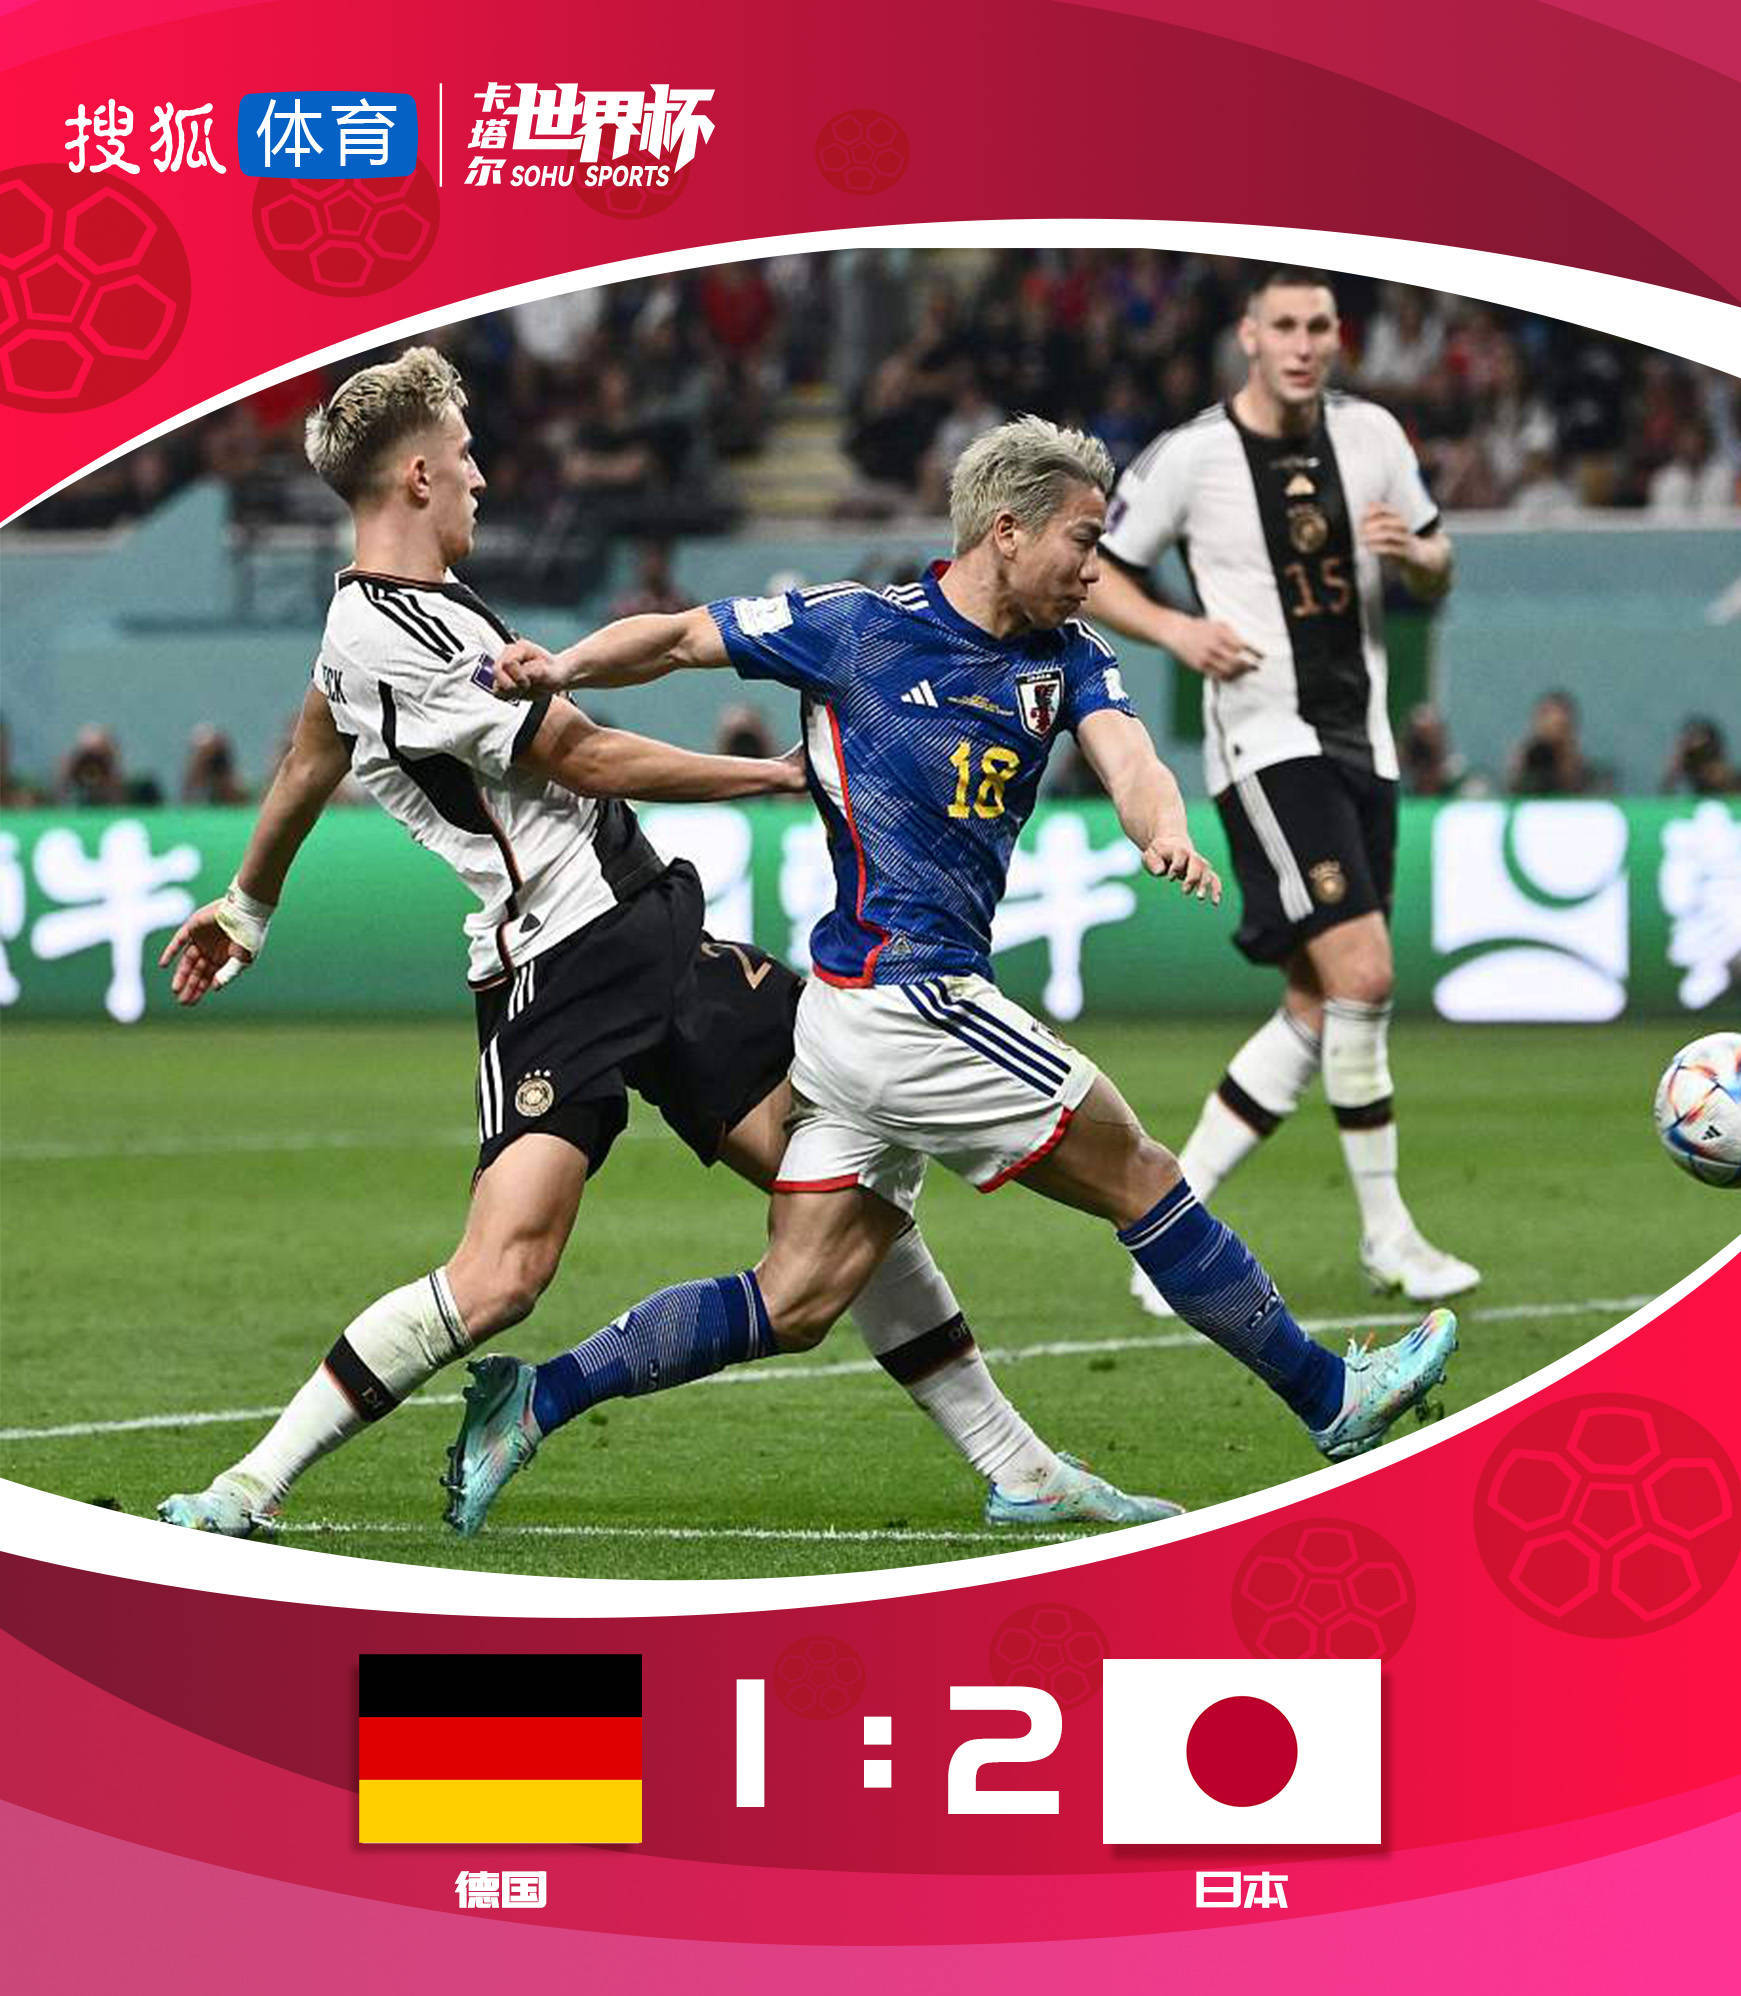 世界杯-浅野拓磨绝杀 德国8分钟内连丢2球1-2日本